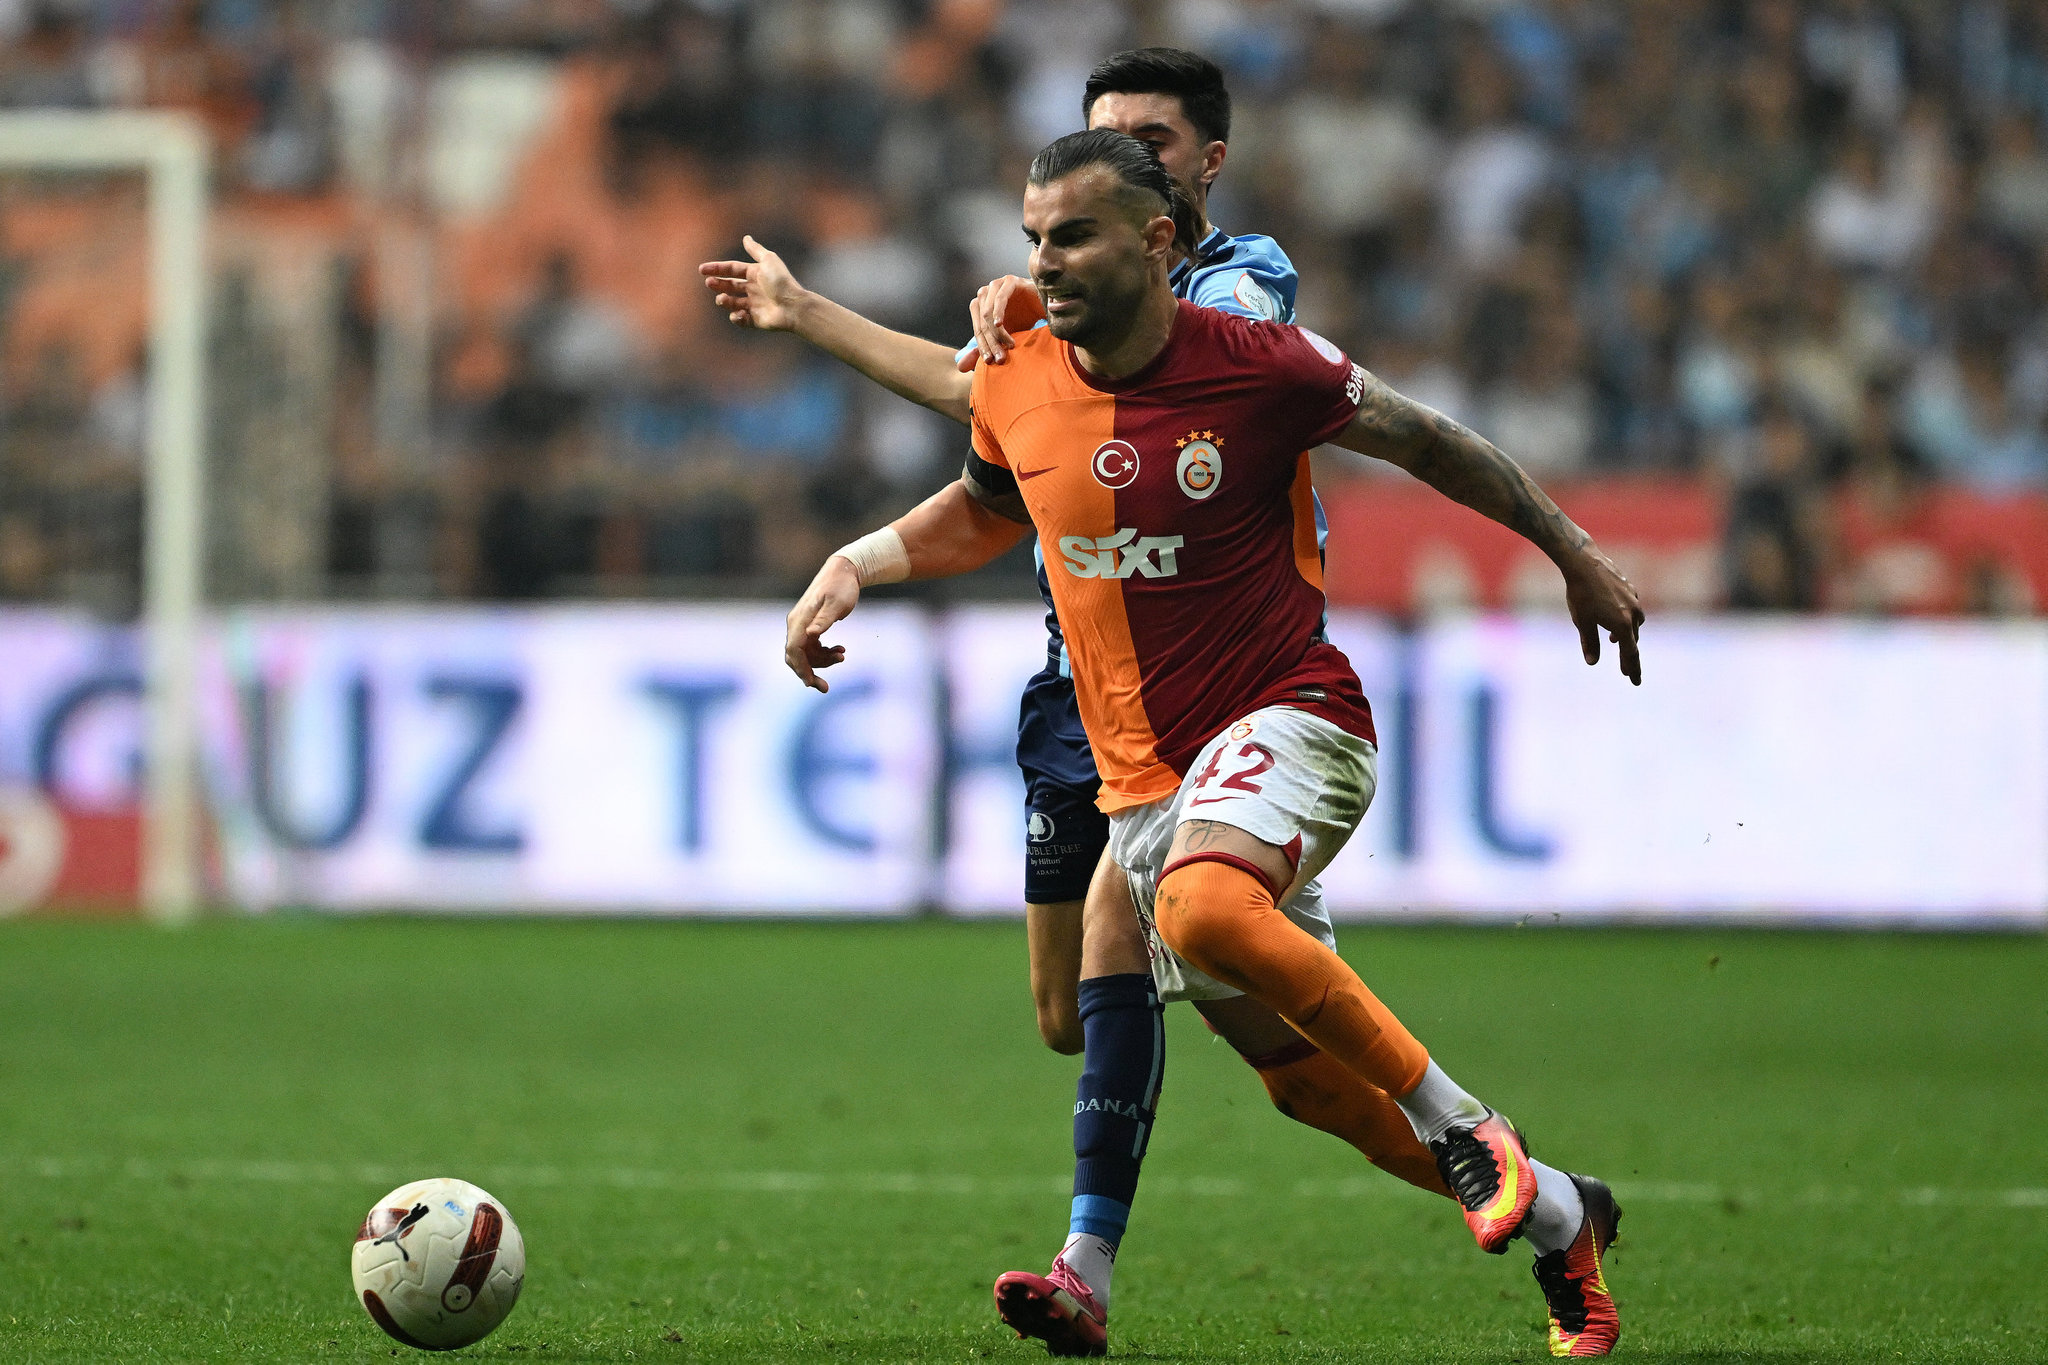 TRANSFER HABERİ | Tarihe geçecek imza! Galatasaray transfer rekorunu kırıyor